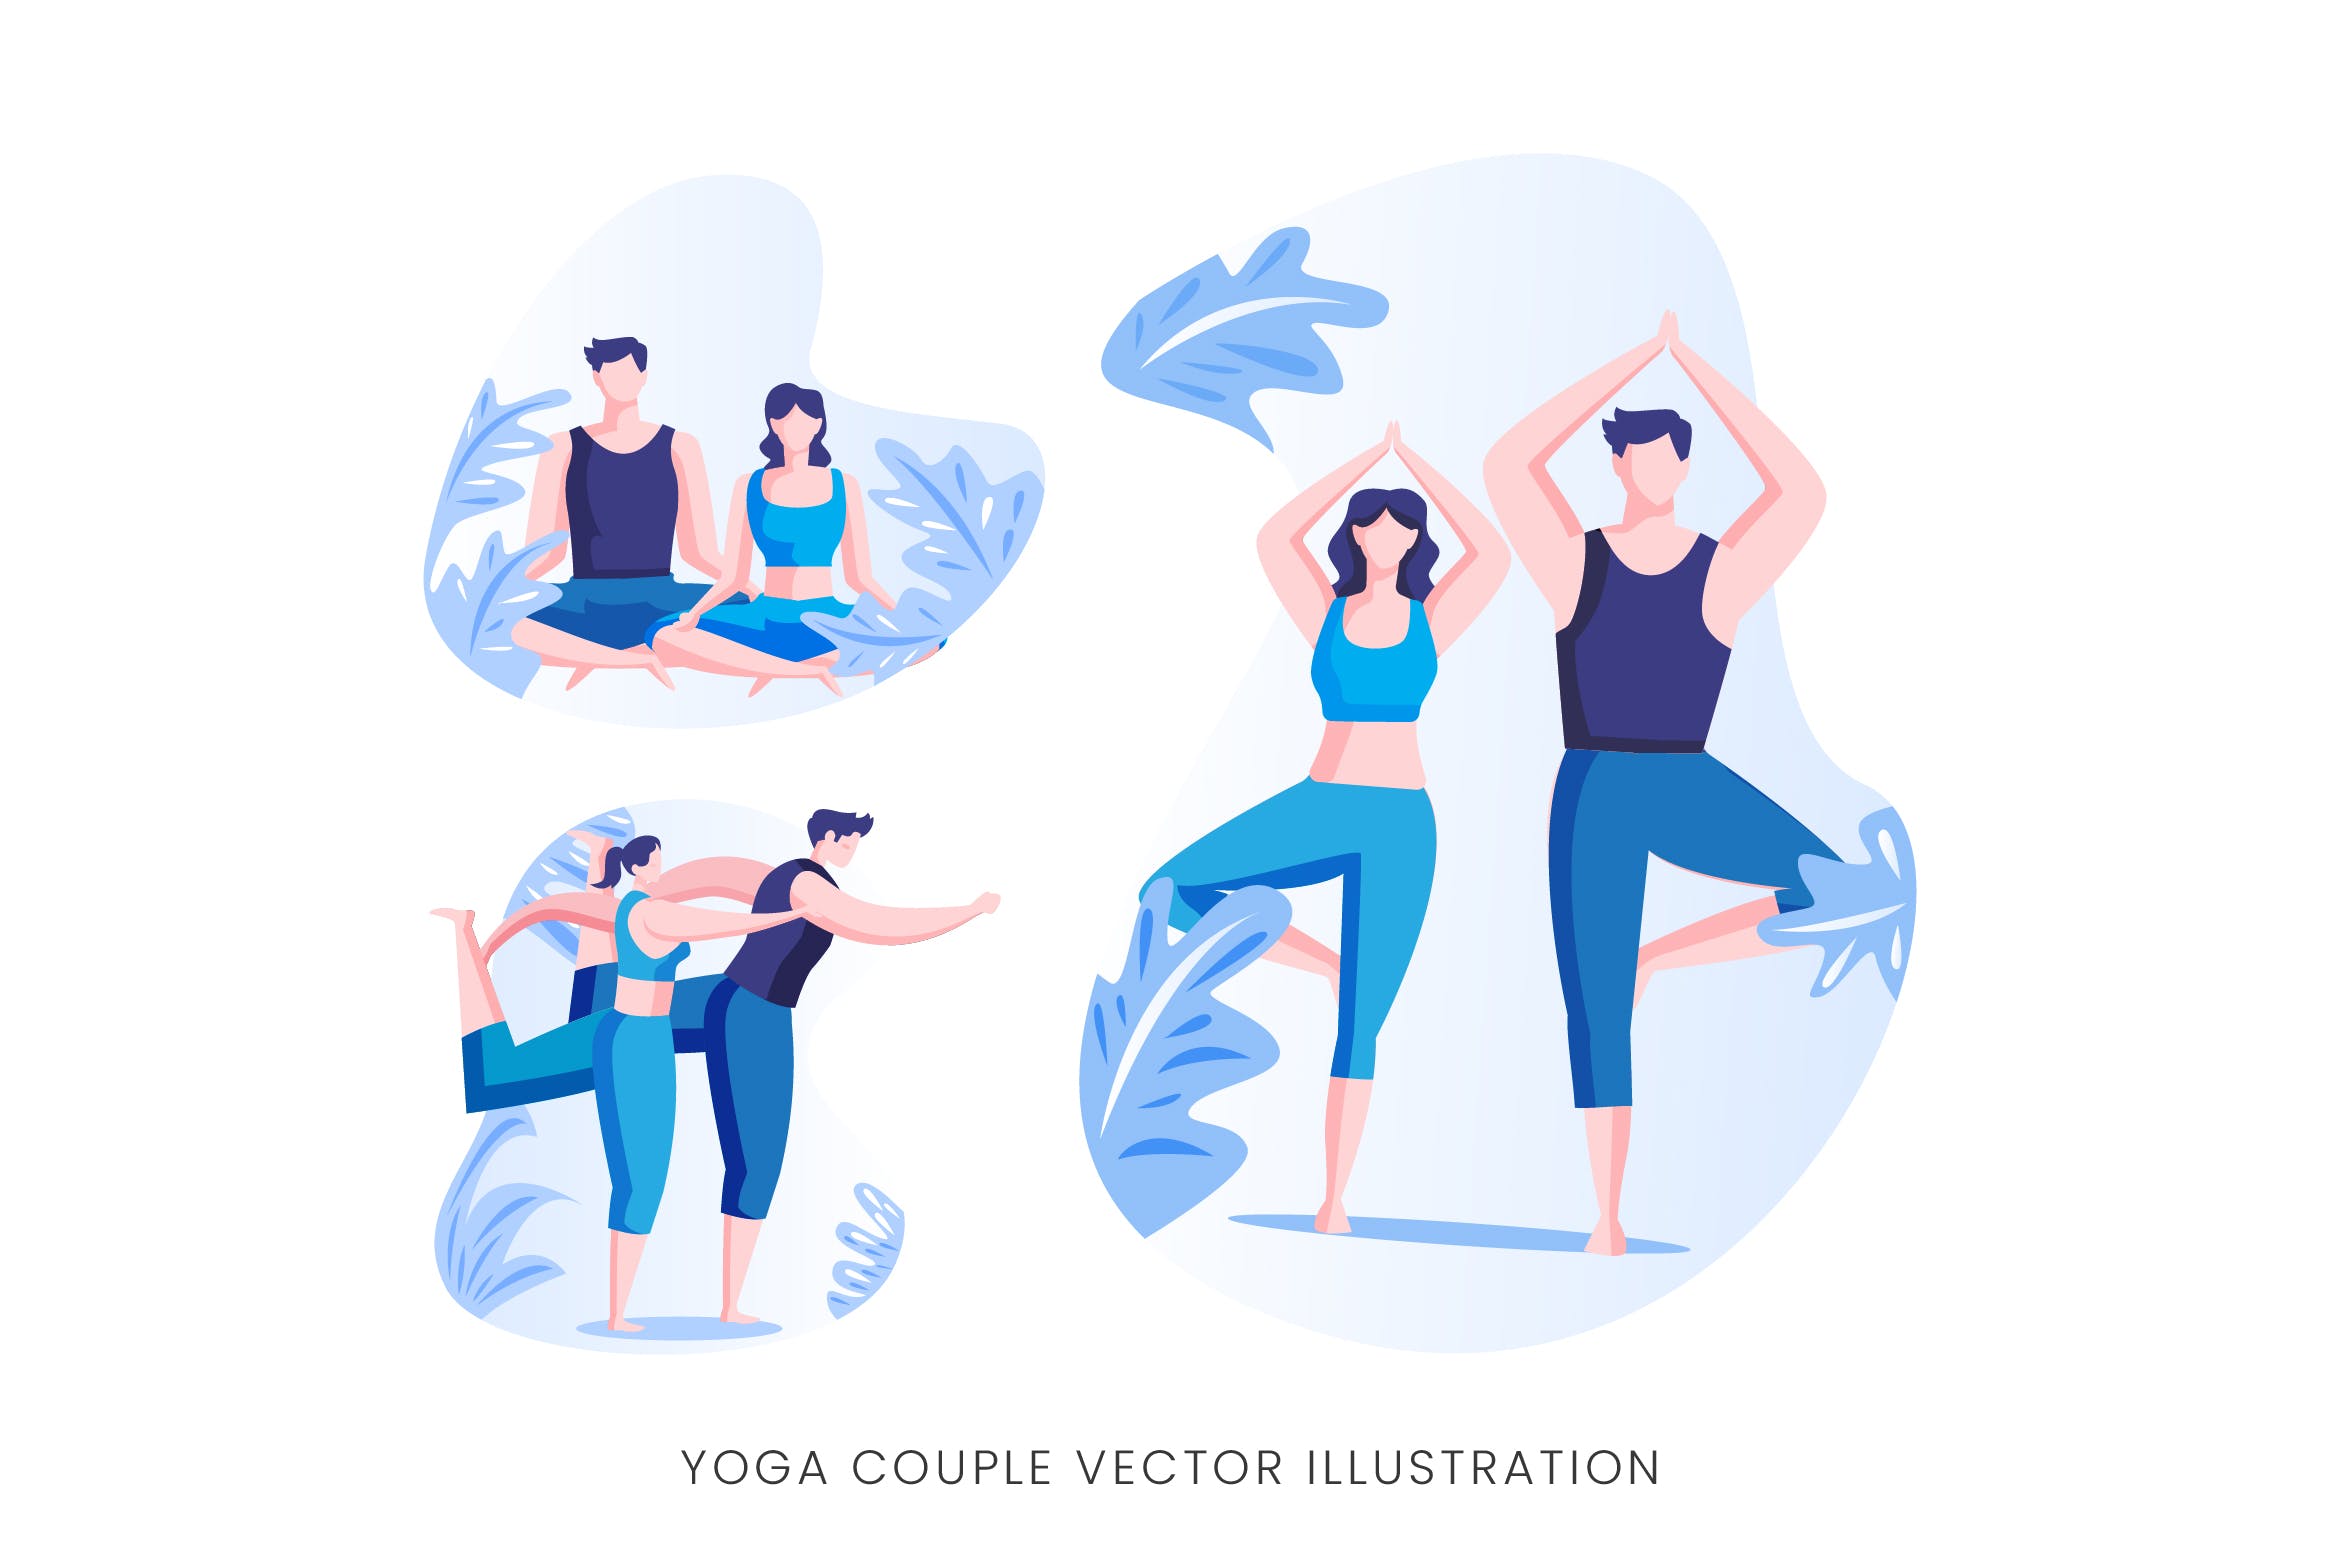 瑜珈情侣人物形象矢量手绘16设计网精选设计素材 Yoga Couple Vector Character Set插图